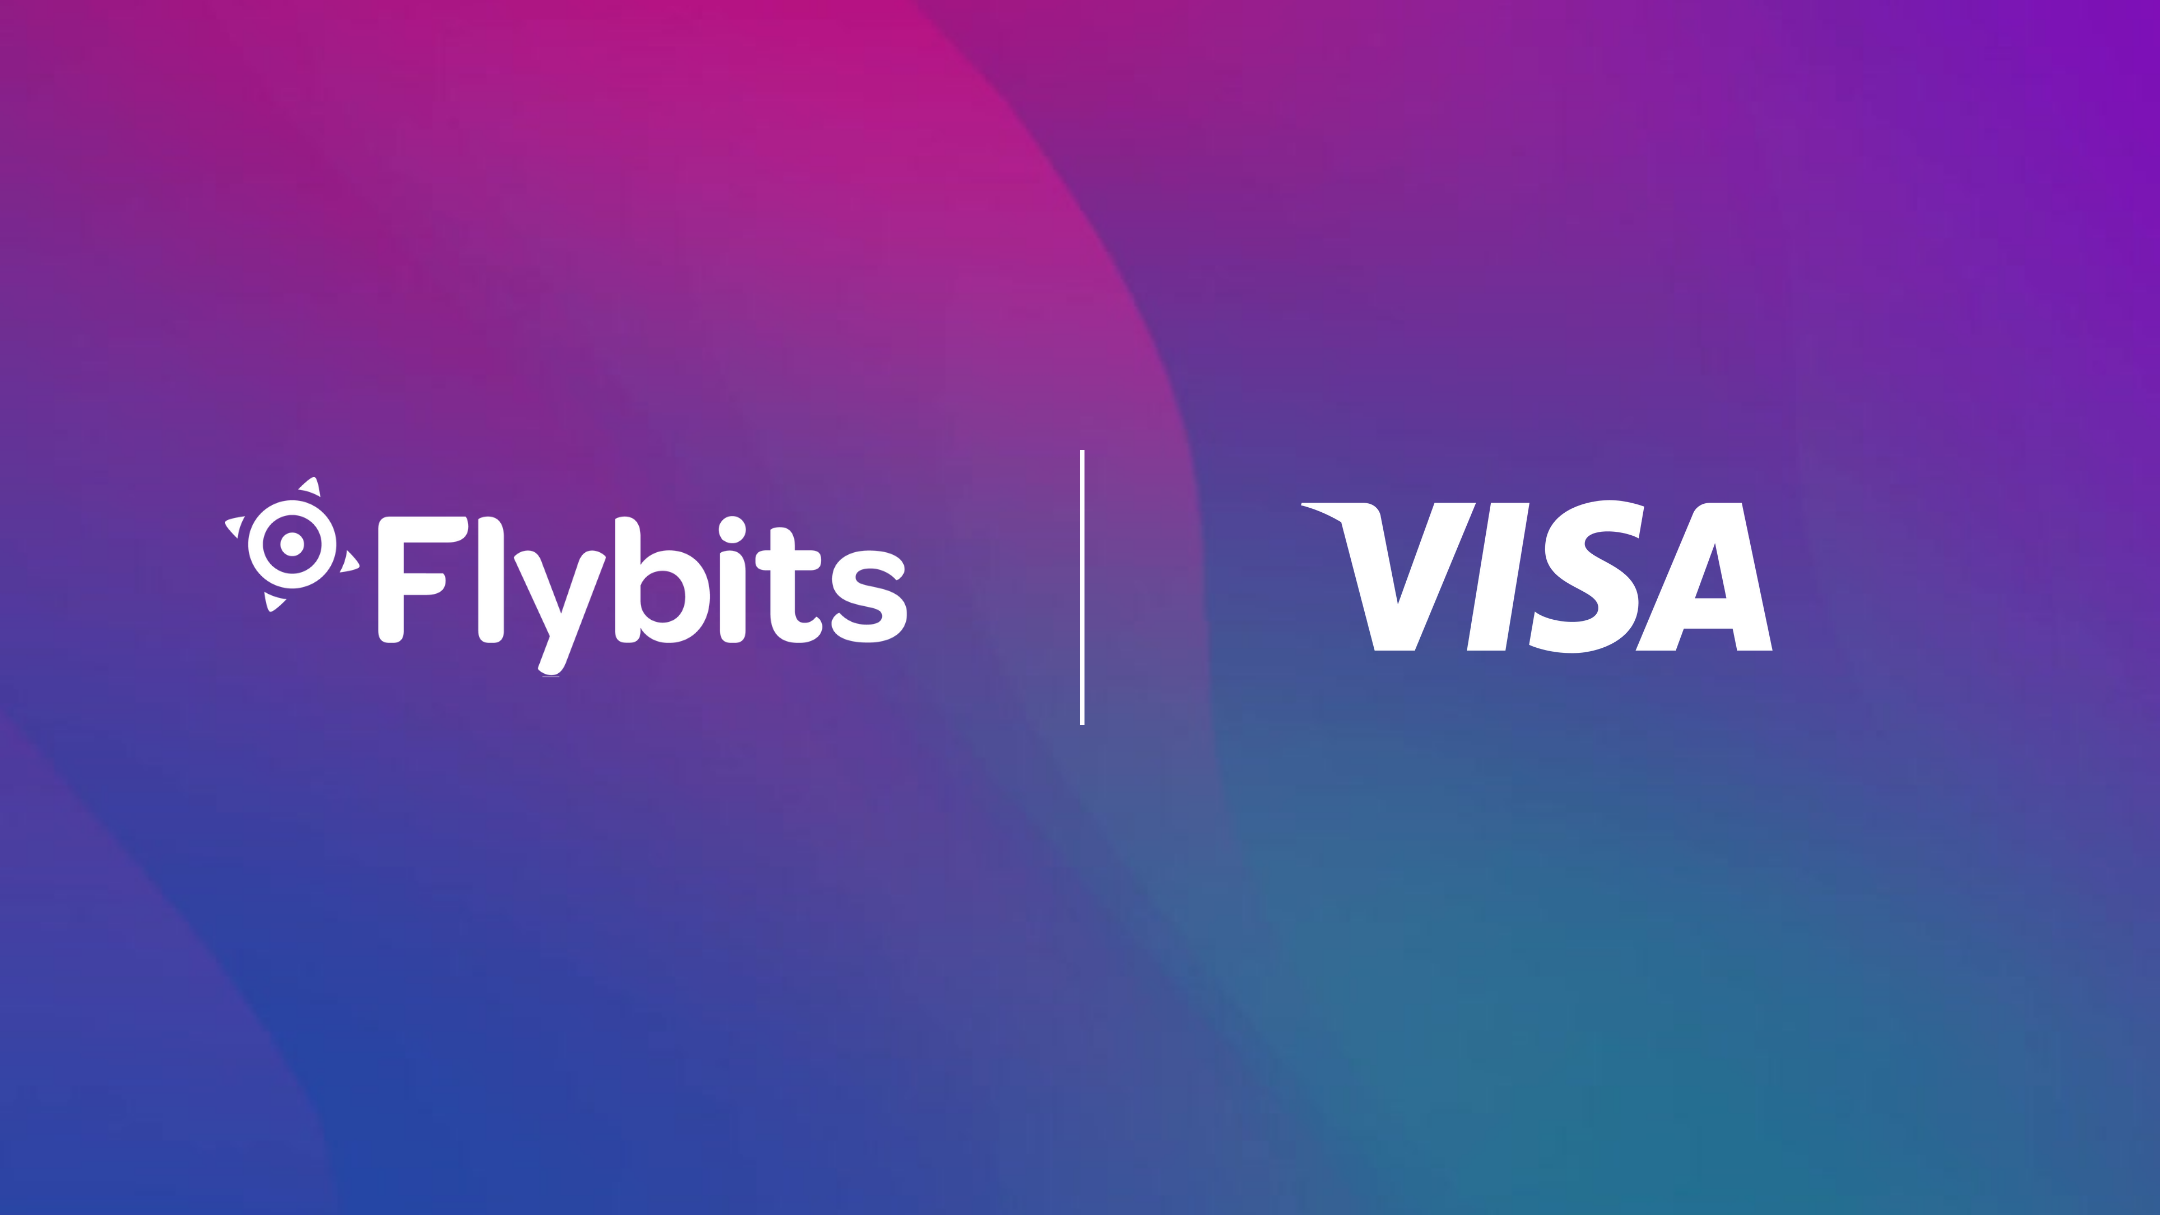 Flybits Visa Partnership